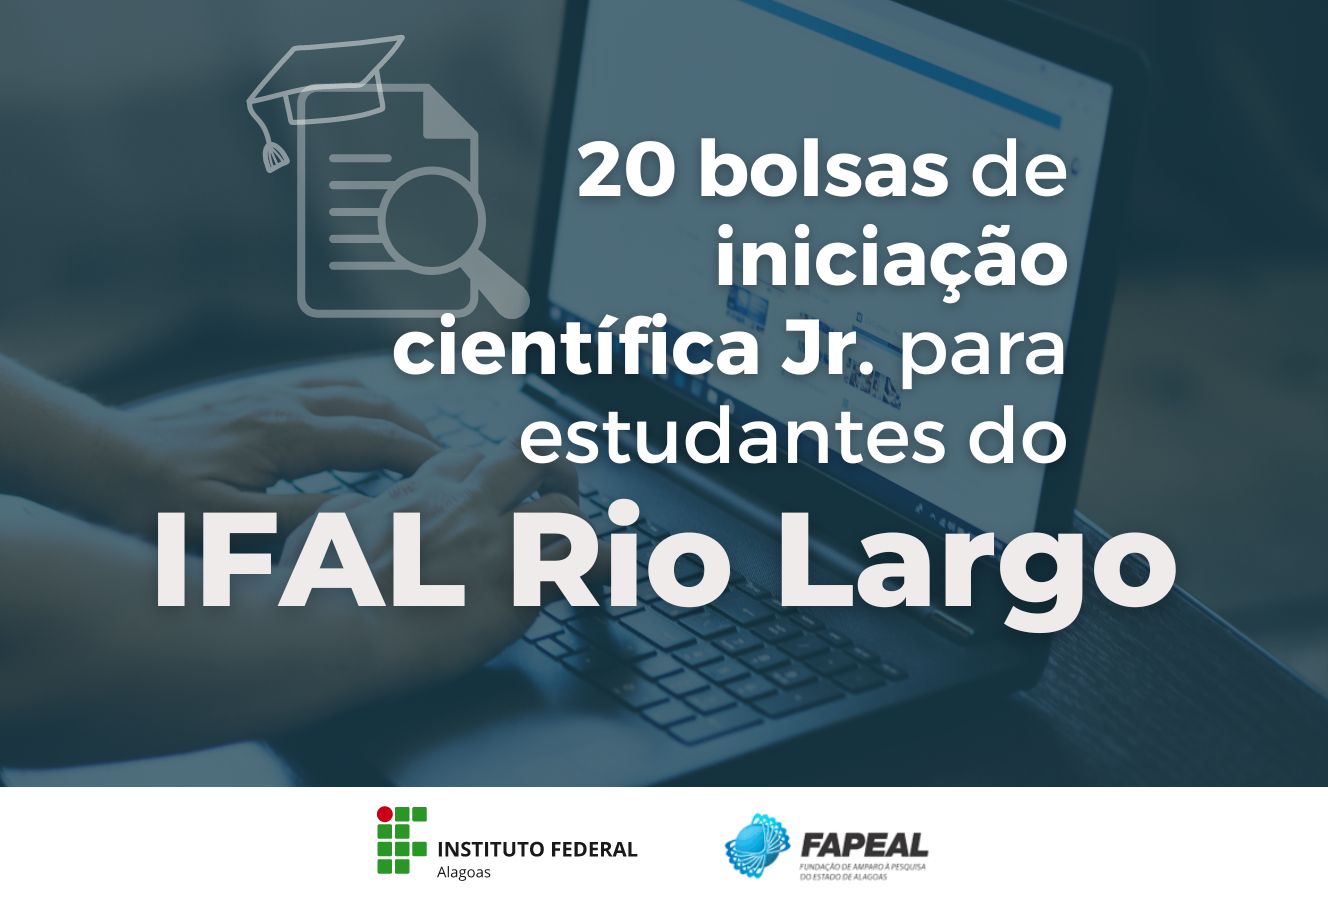 Bolsas de Iniciação Científica Jr. para estudantes do Ifal Rio Largo